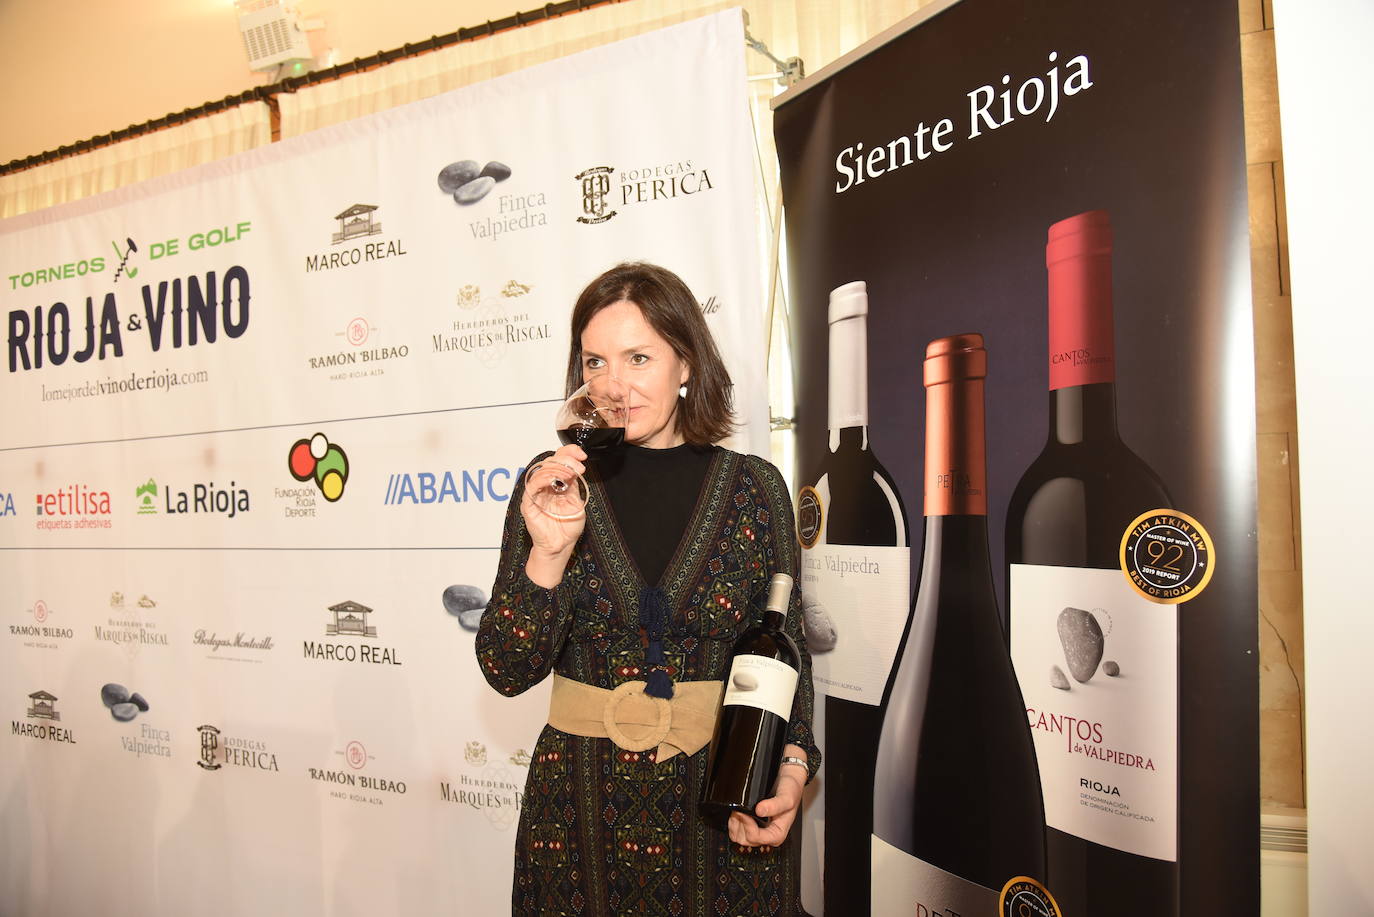 Cata de vinos de Finca Valpiedra en el Torneo Golf Rioja&Vino 